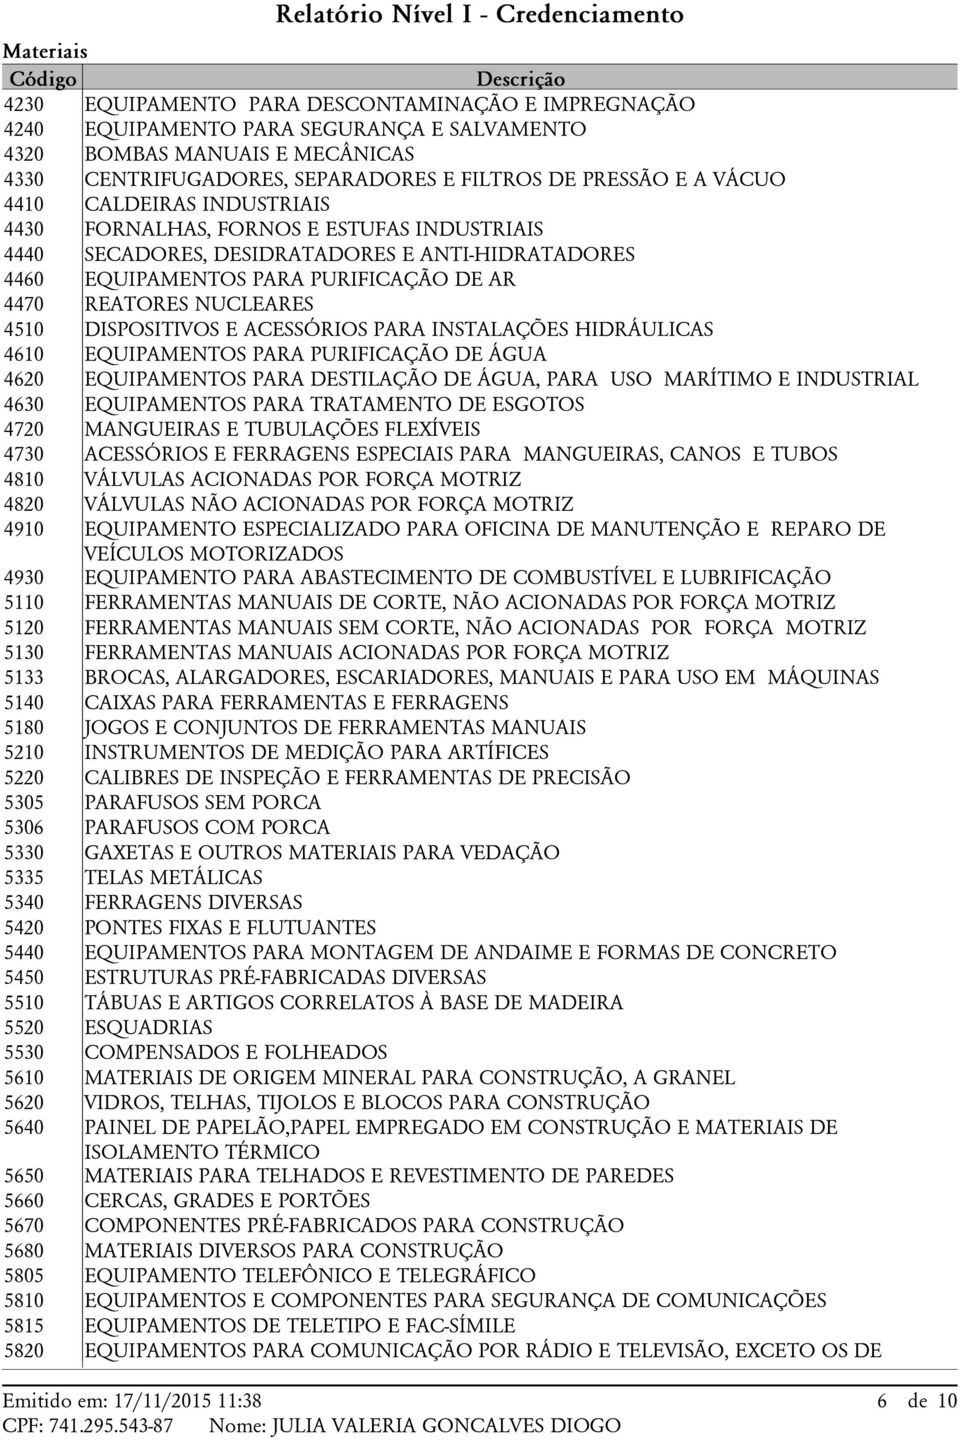 DISPOSITIVOS E ACESSÓRIOS PARA INSTALAÇÕES HIDRÁULICAS 4610 EQUIPAMENTOS PARA PURIFICAÇÃO DE ÁGUA 4620 EQUIPAMENTOS PARA DESTILAÇÃO DE ÁGUA, PARA USO MARÍTIMO E INDUSTRIAL 4630 EQUIPAMENTOS PARA